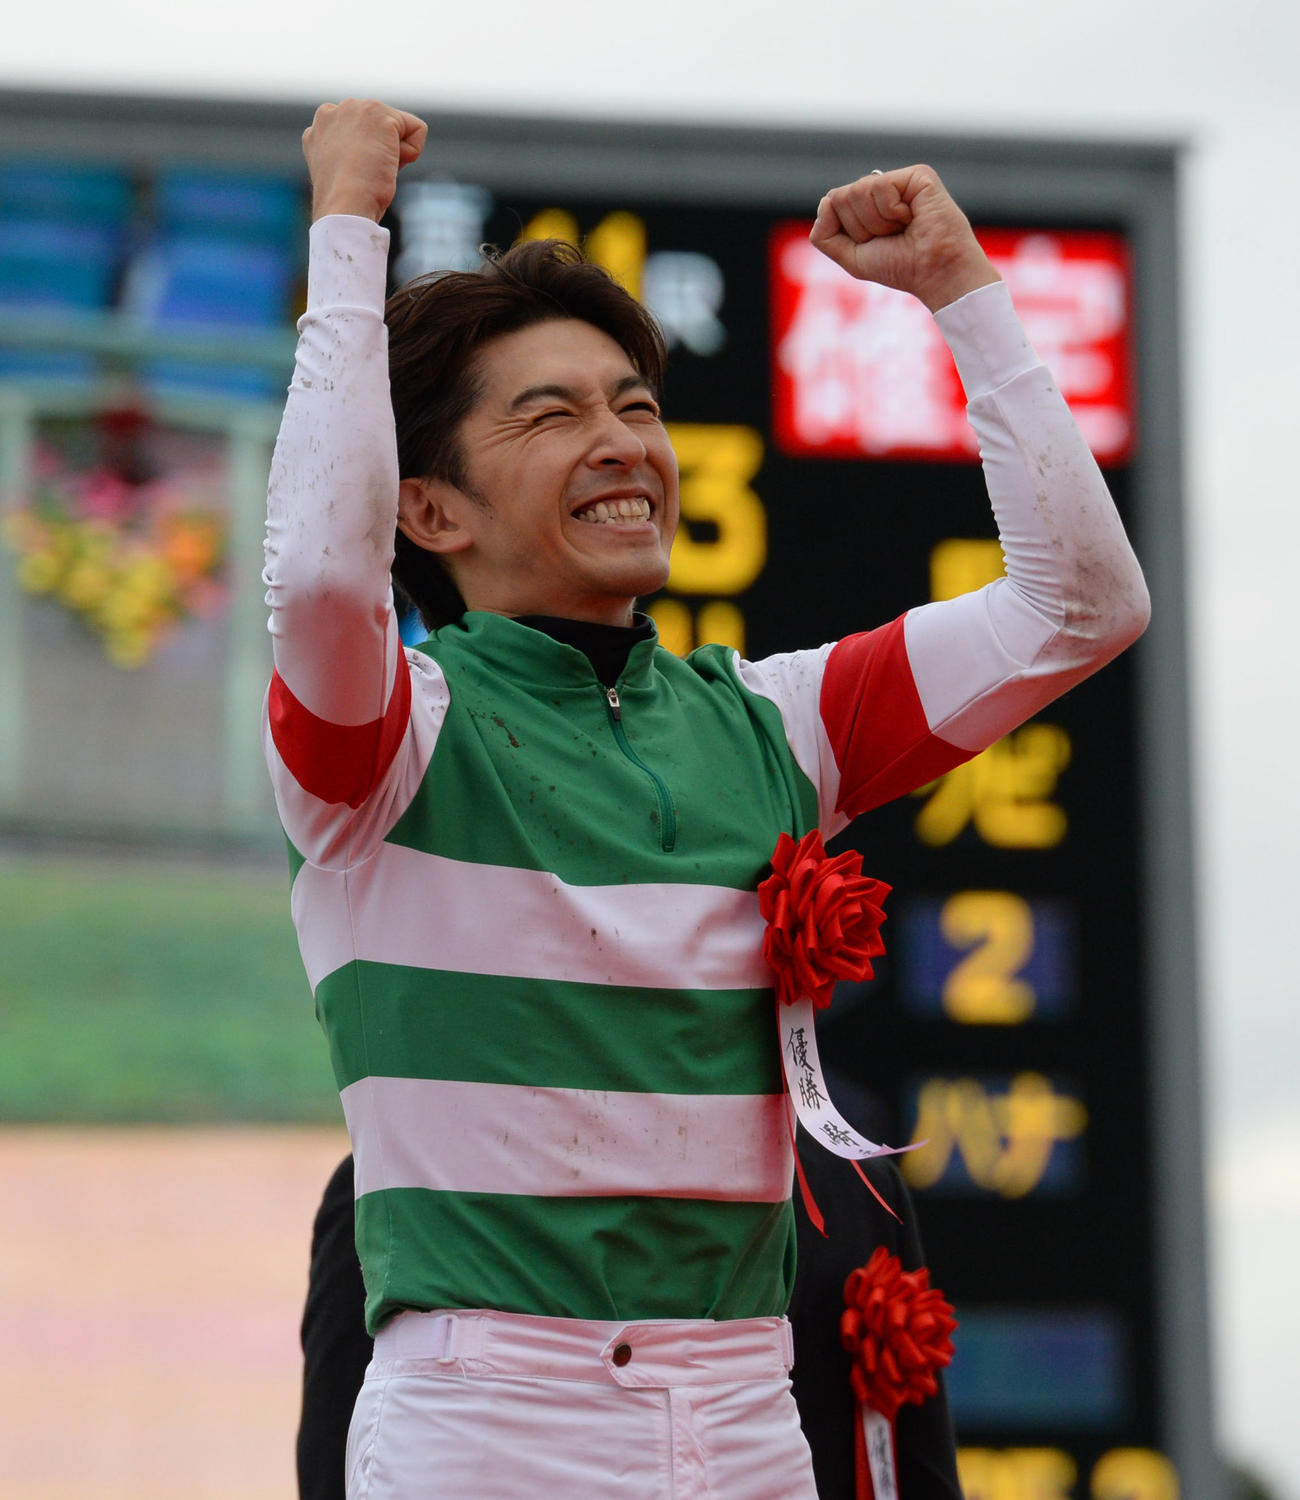 13年10月、エピファネイアで菊花賞を勝った福永騎手は表彰台でガッツポーズ